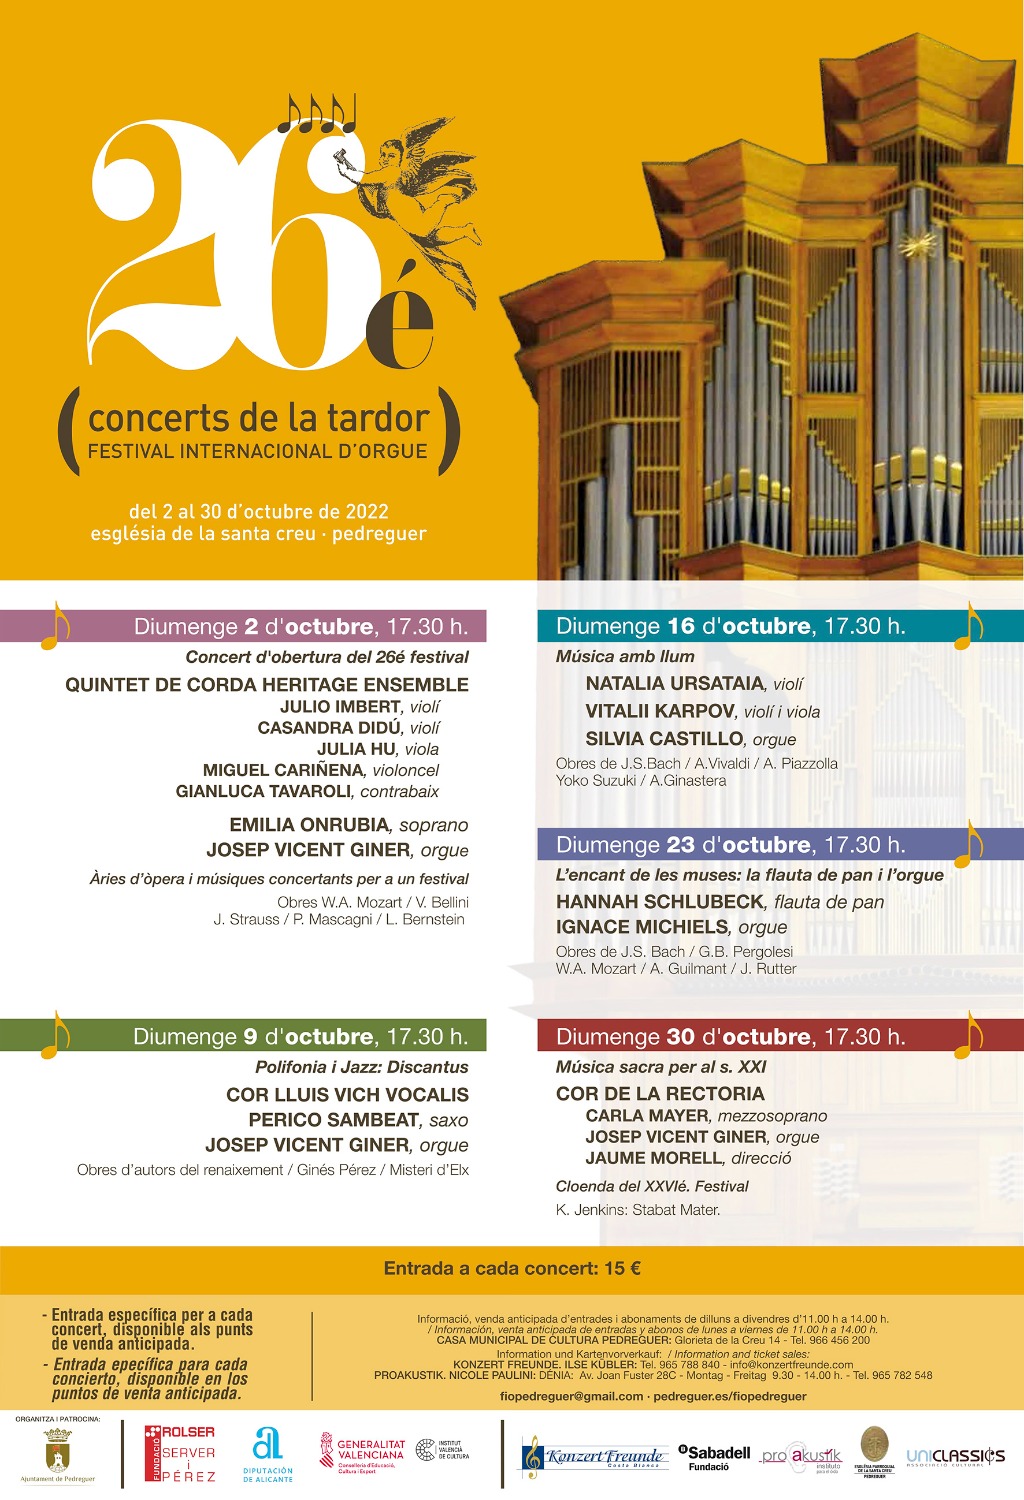 Solistes i formacions instrumentals i vocals de molt alt nivell artístic protagonitzaran la XXVI edició dels Concerts de la Tardor de Pedreguer